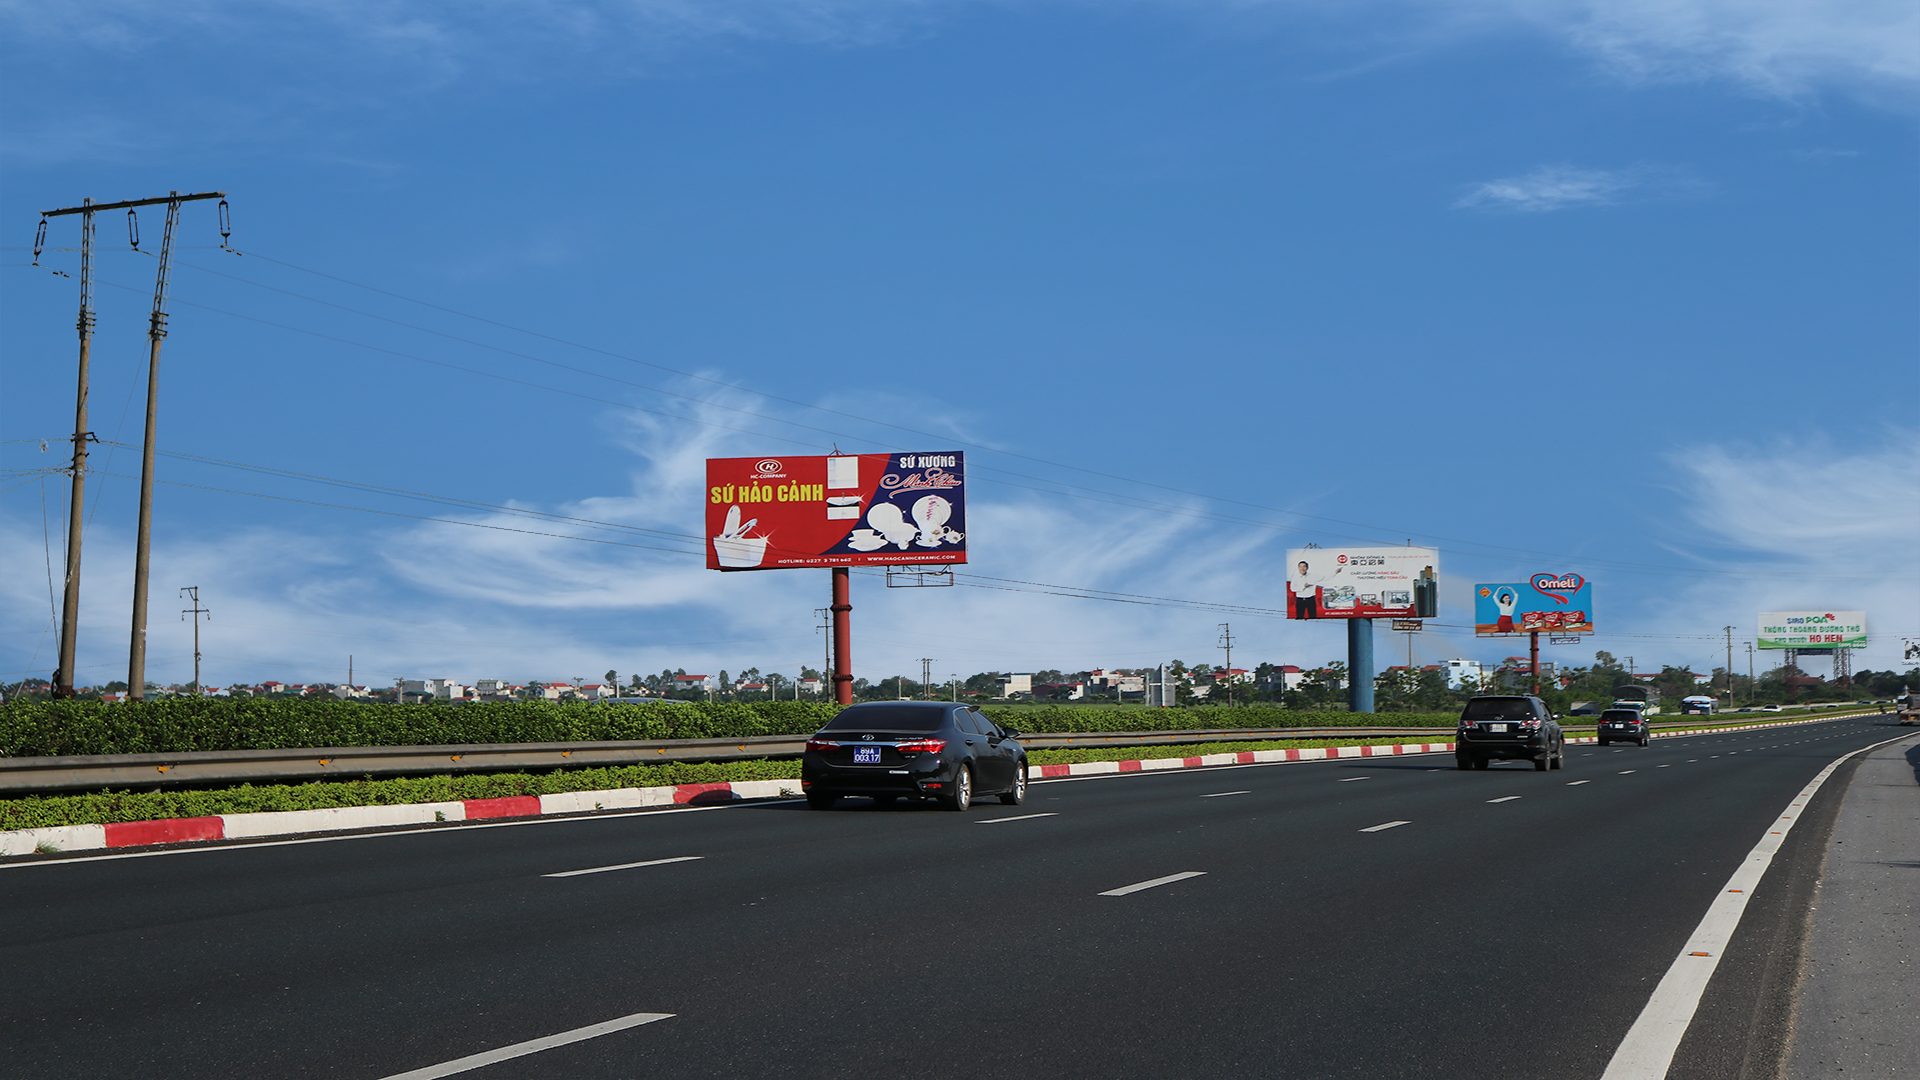 Bảng quảng cáo cao tốc – Pháp Vân – Cầu Giẽ – 61B